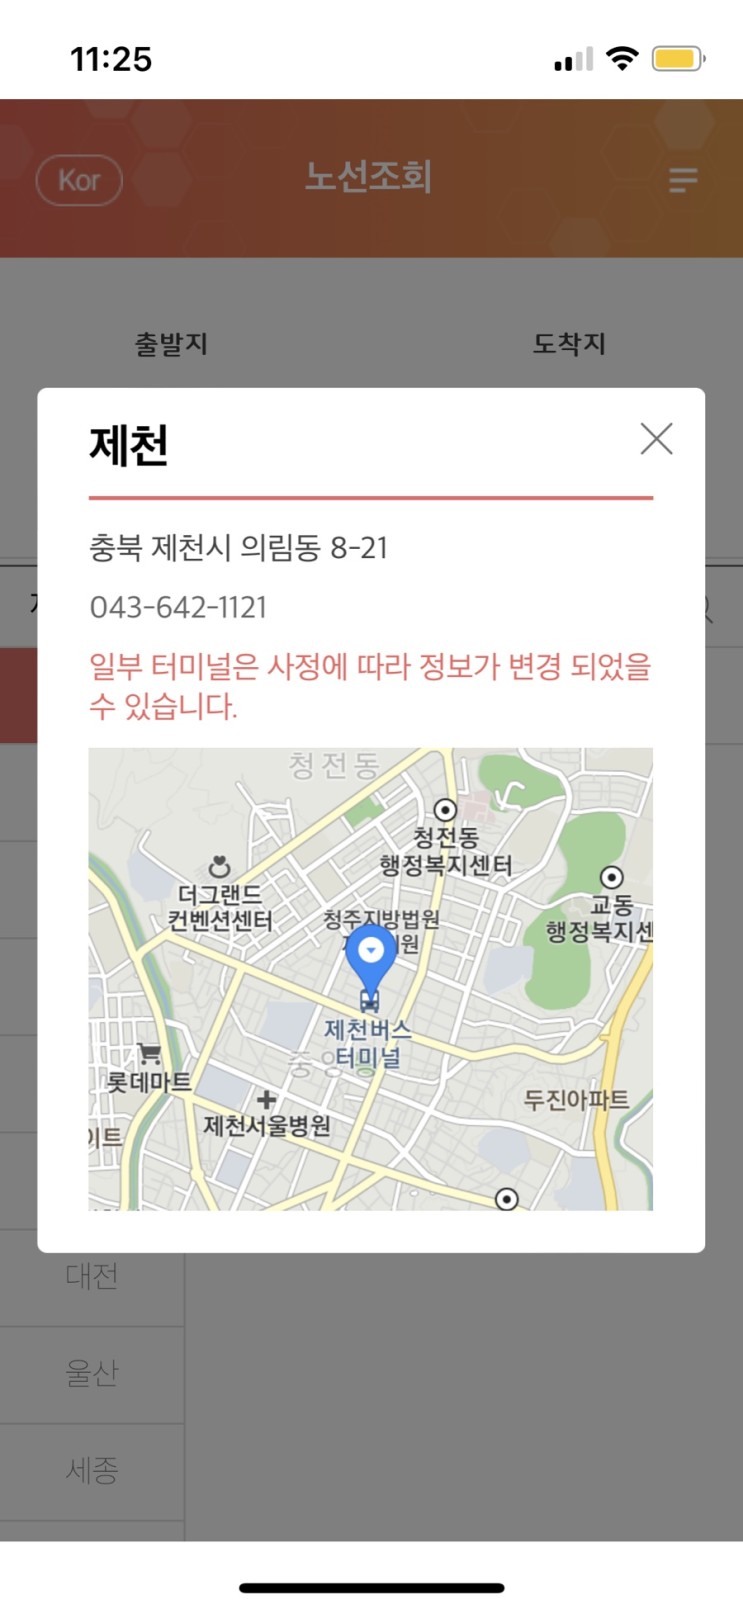 인천 - 제천 버스 왕복 예매 힘들다( 어플 두 개 필요함)